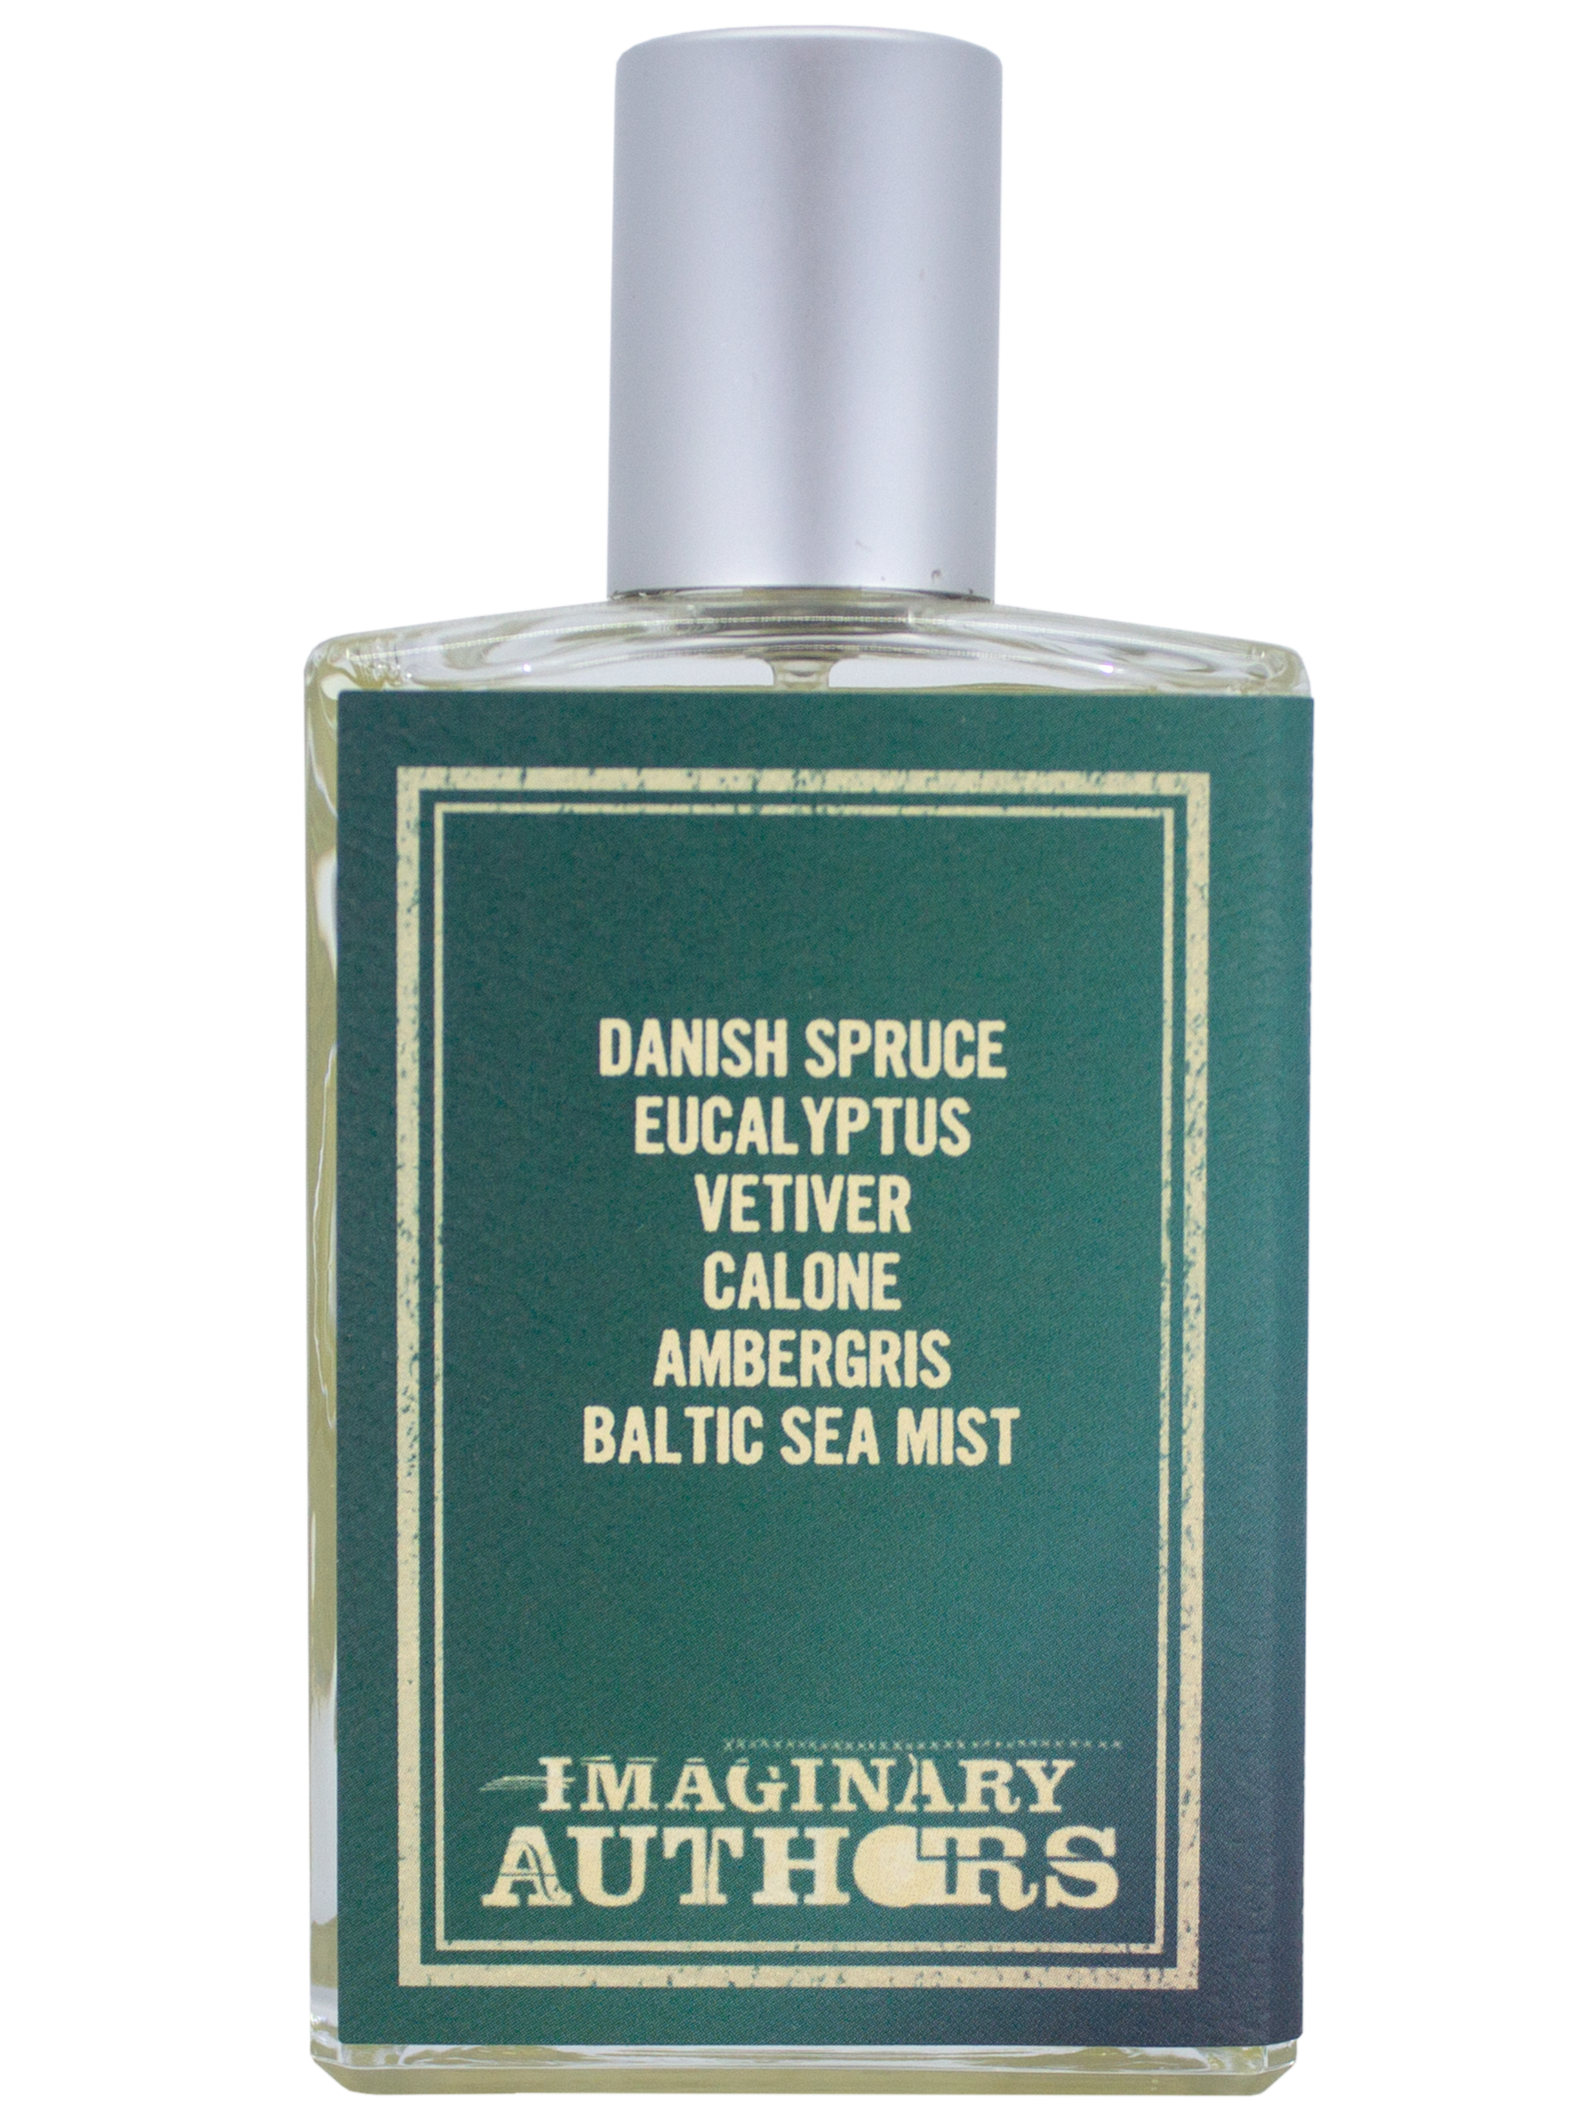 Imaginary Authors EVERY STORM A SERENADE eau de parfum, 